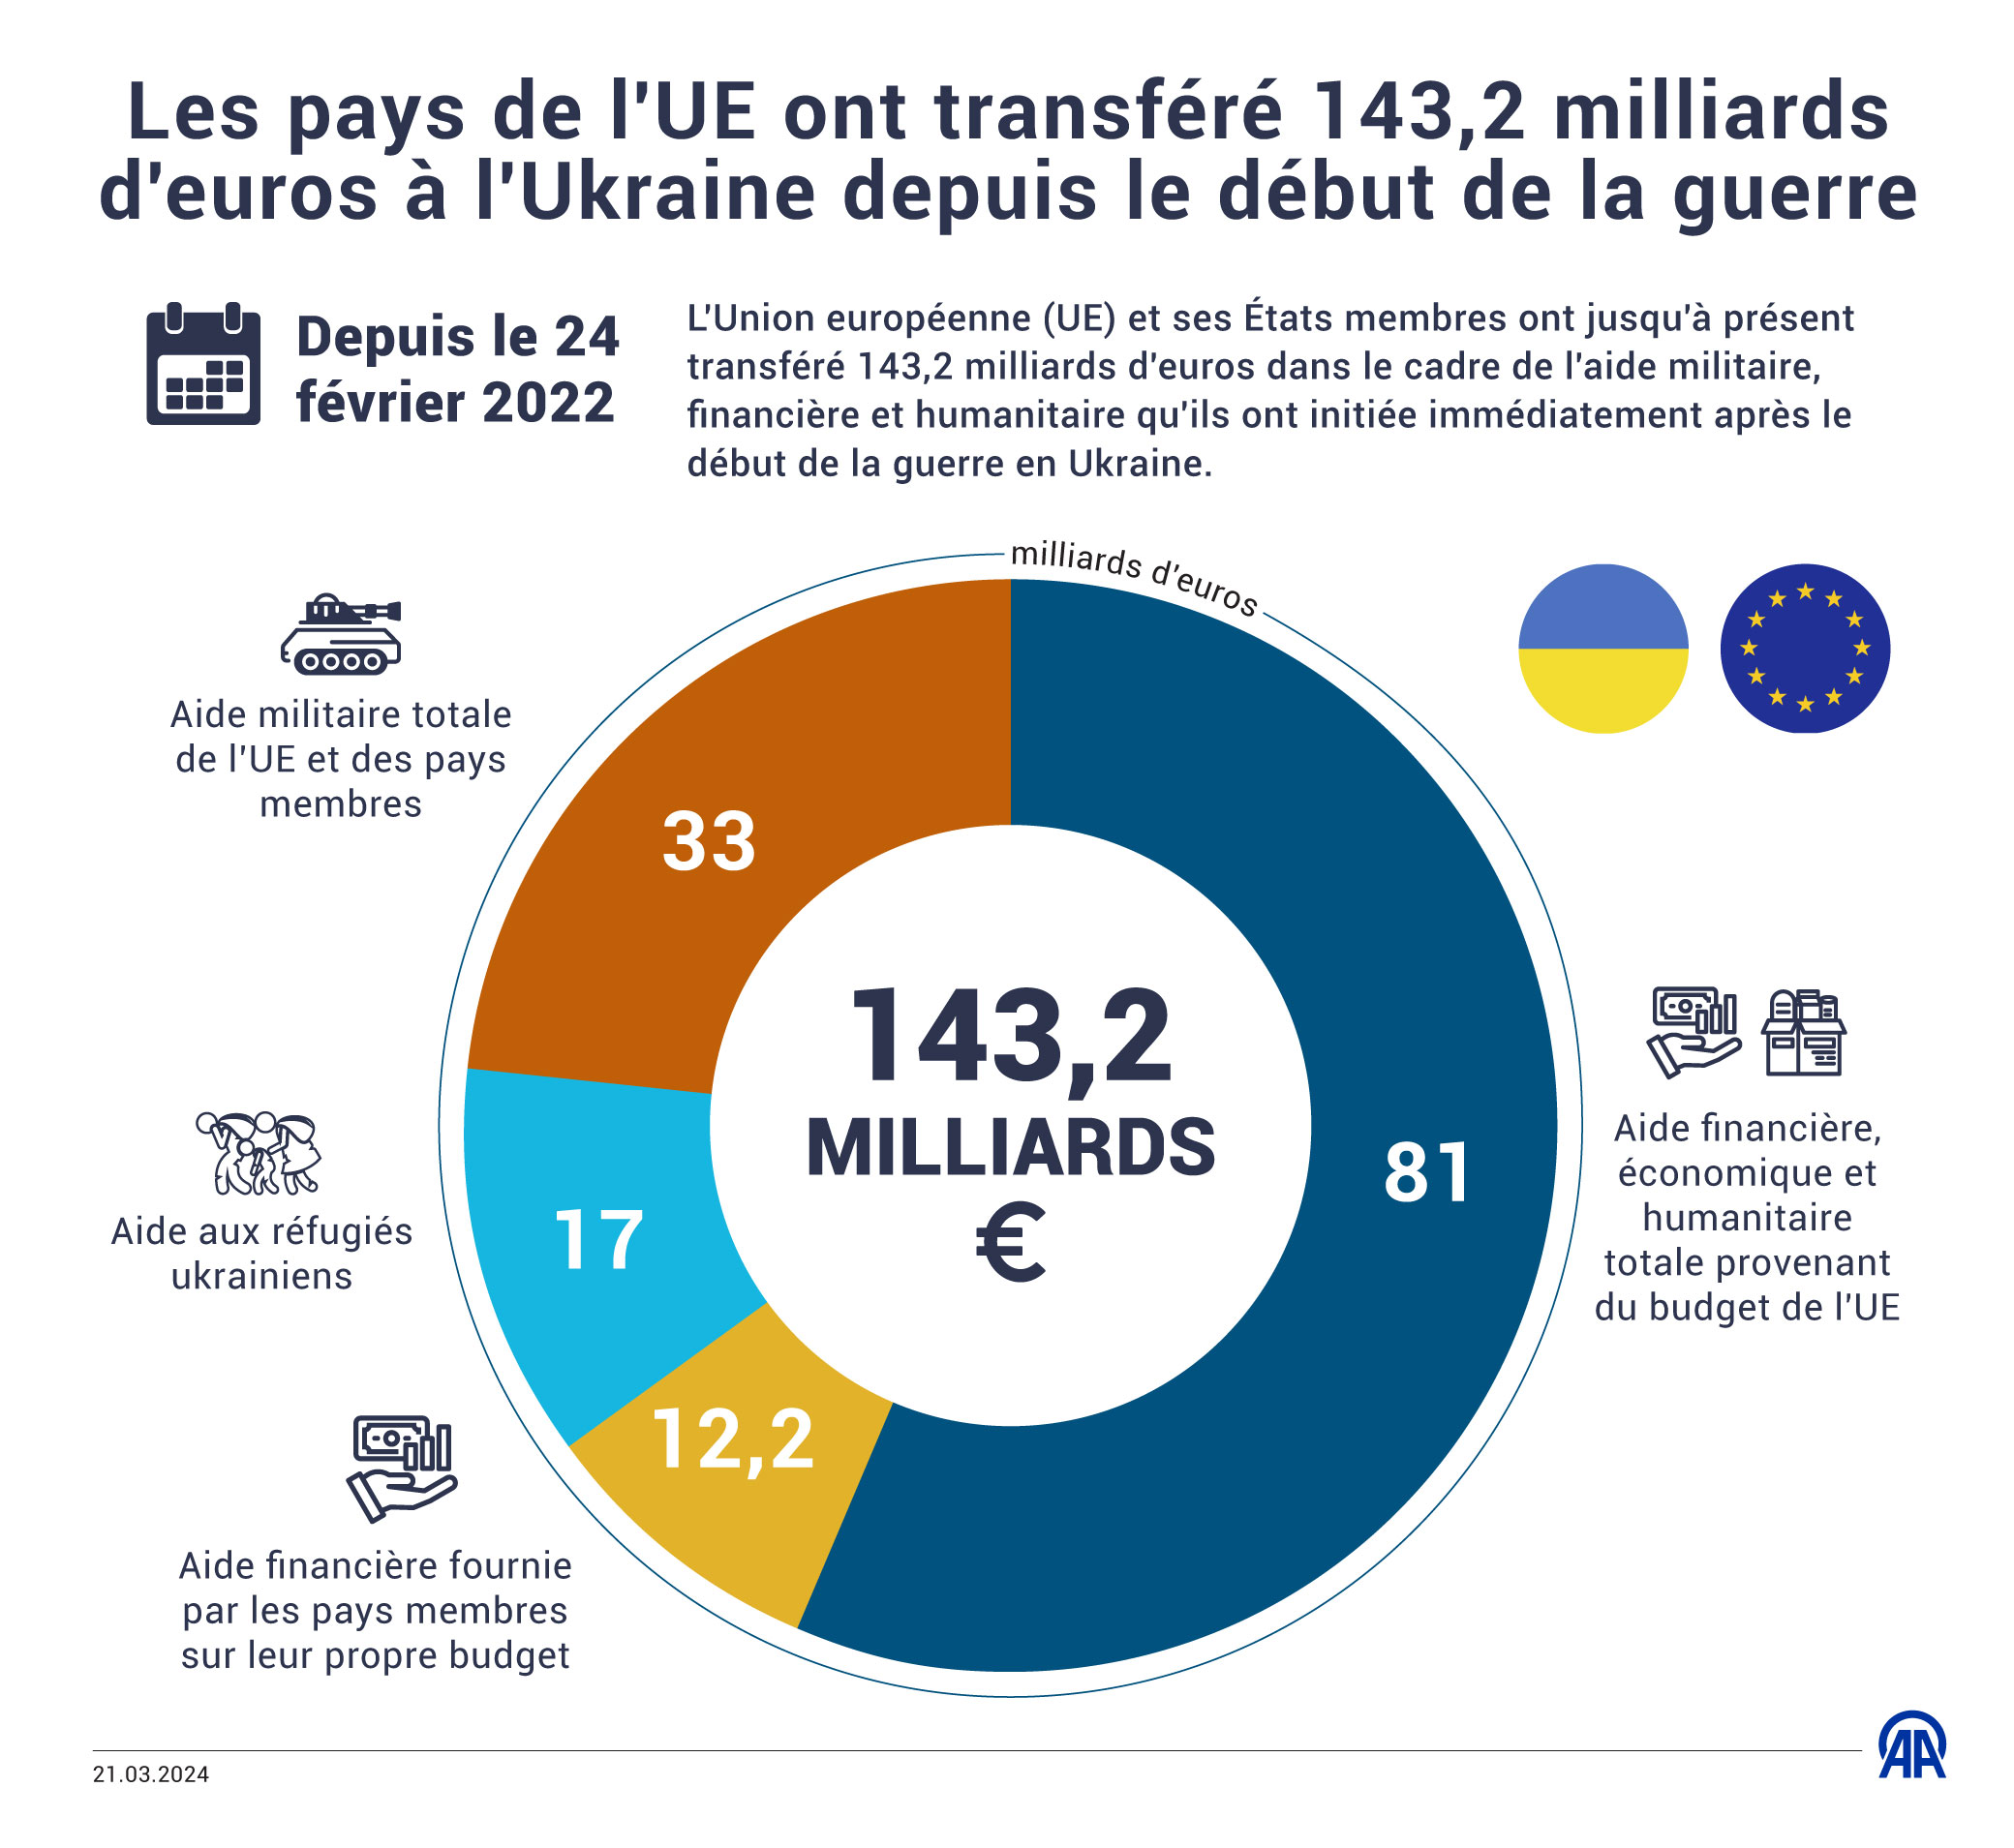 L'Union européenne (UE) et ses États membres ont jusqu'à présent transféré 143,2 milliards d'euros